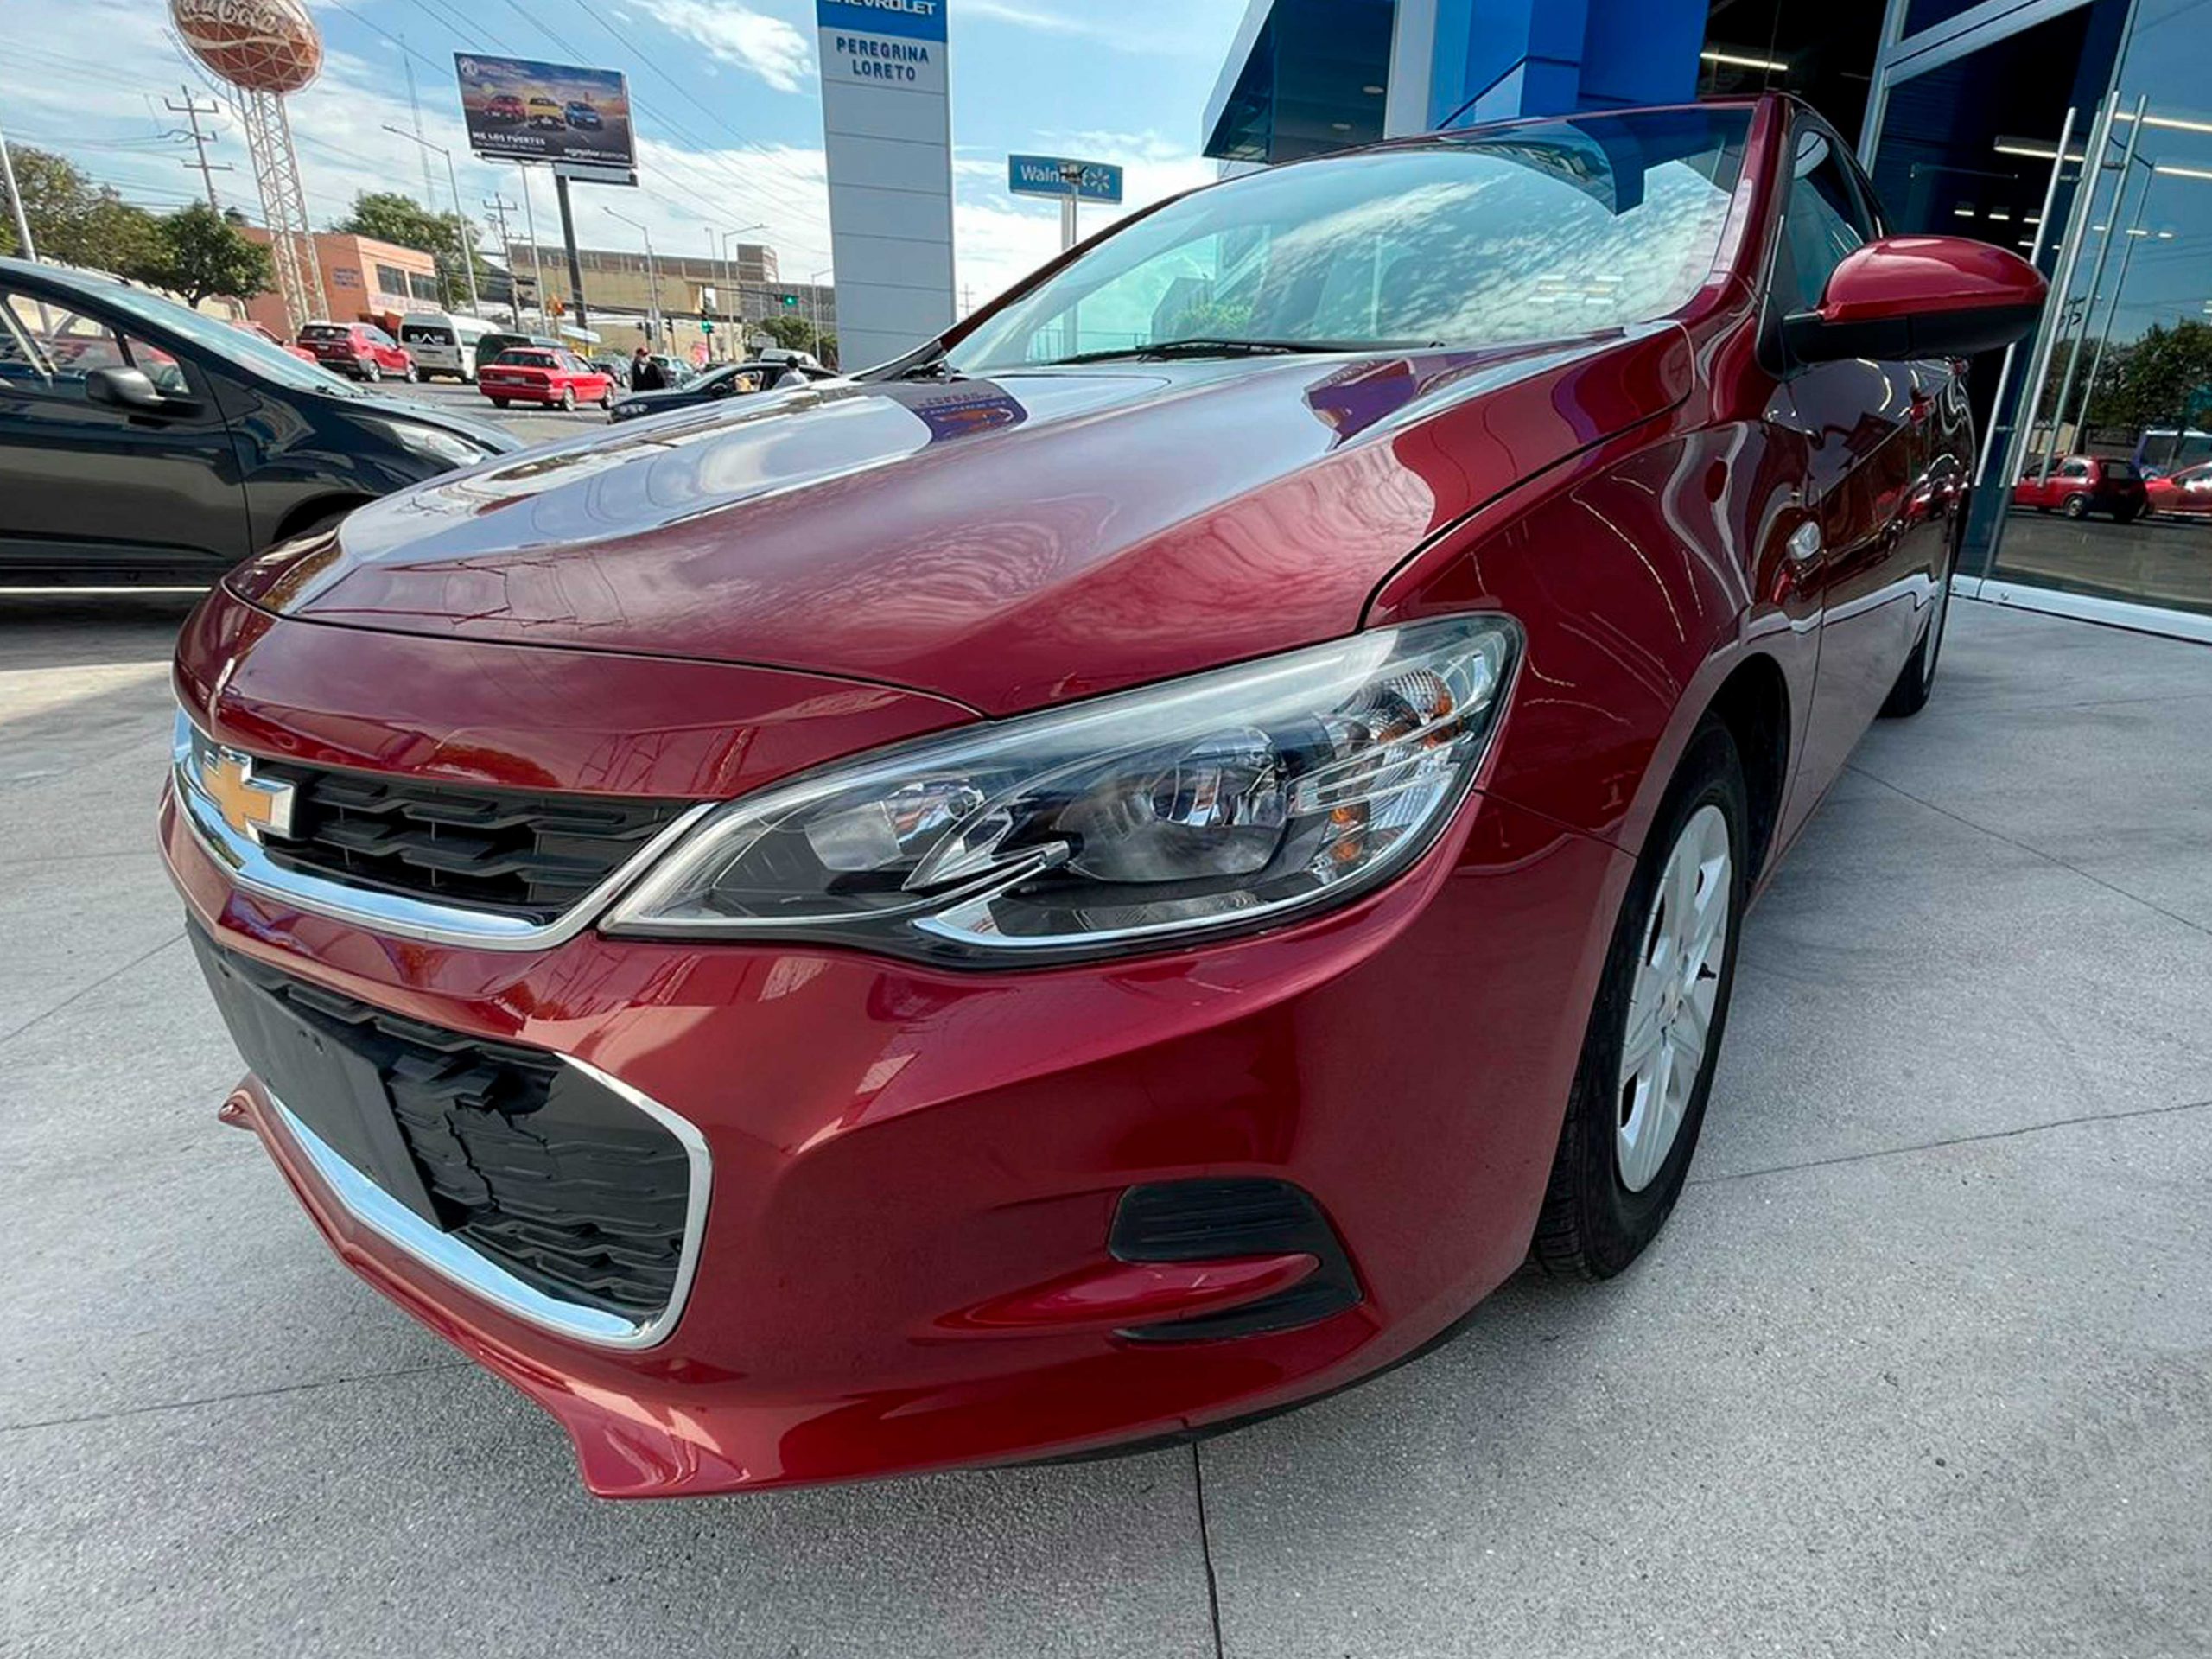 Chevrolet Cavalier LS Paq. "D" Color Rojo Agata 2019 Mt